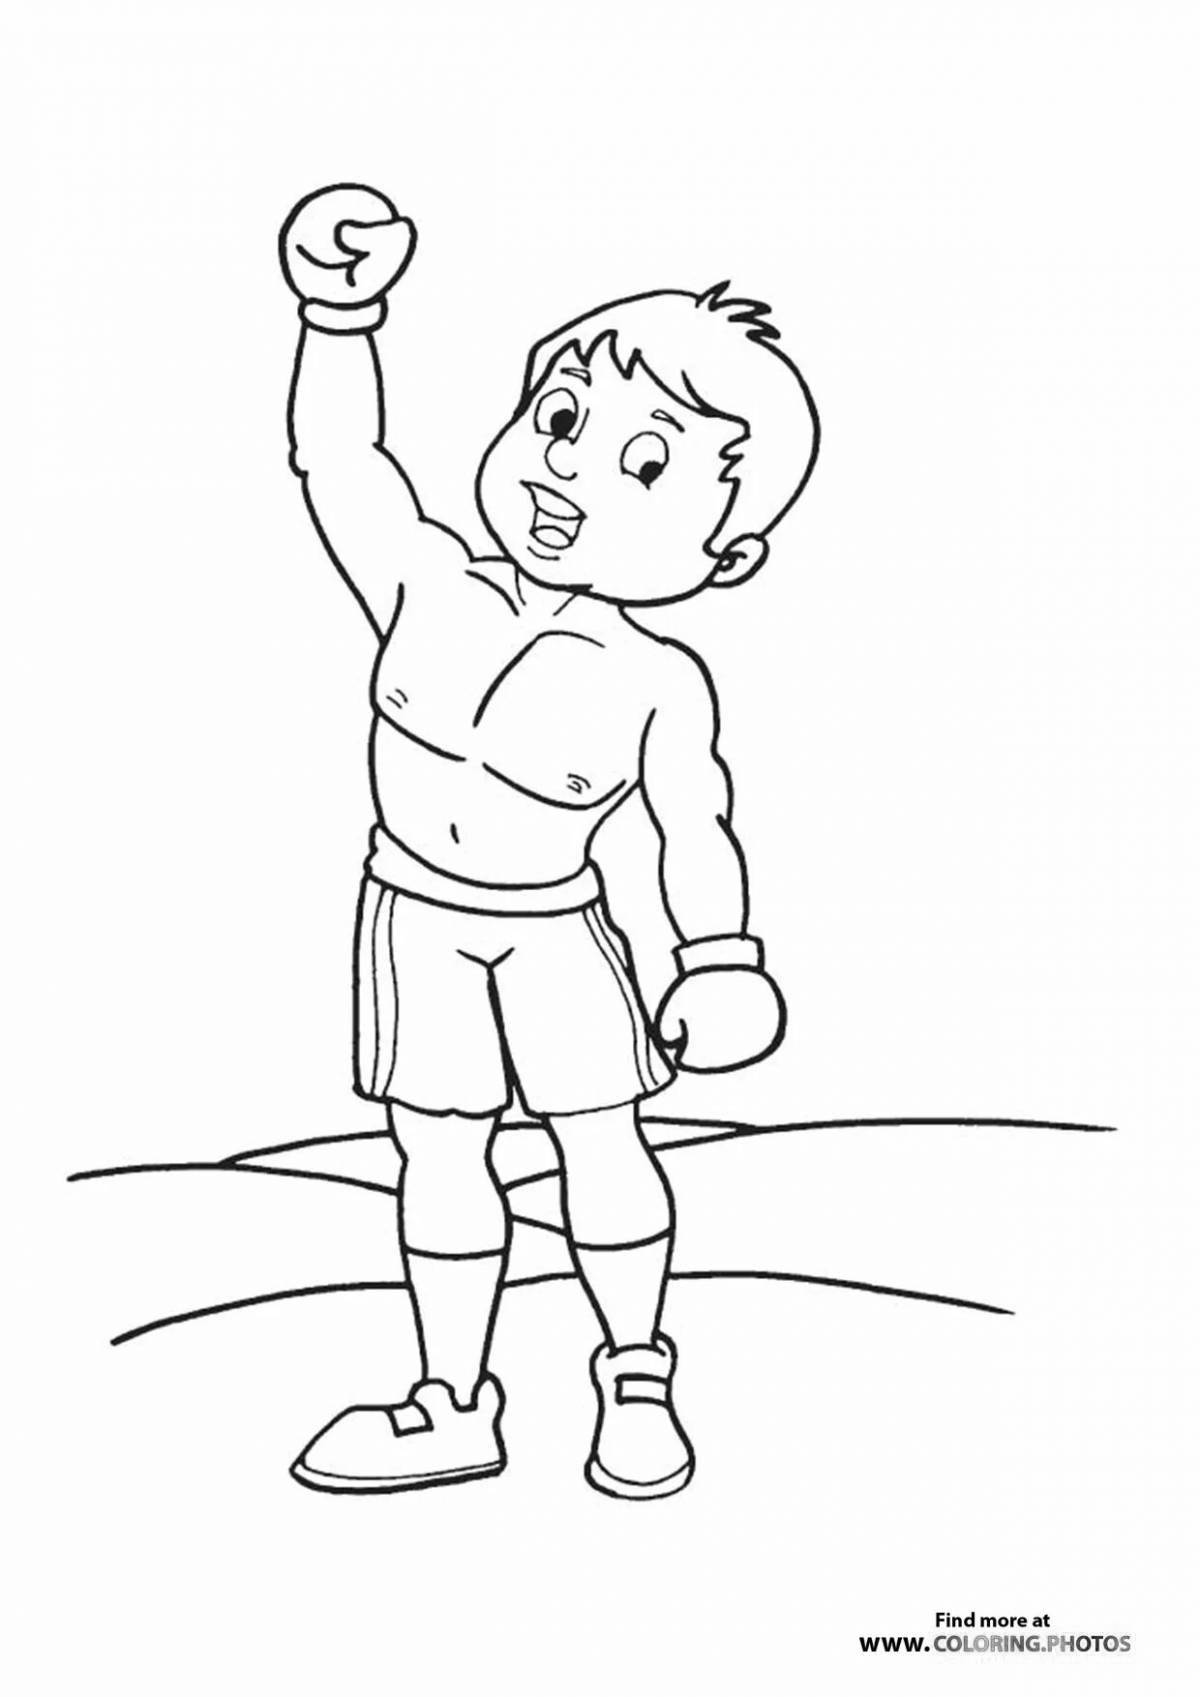 Эффектная раскраска бокса и бу для детей